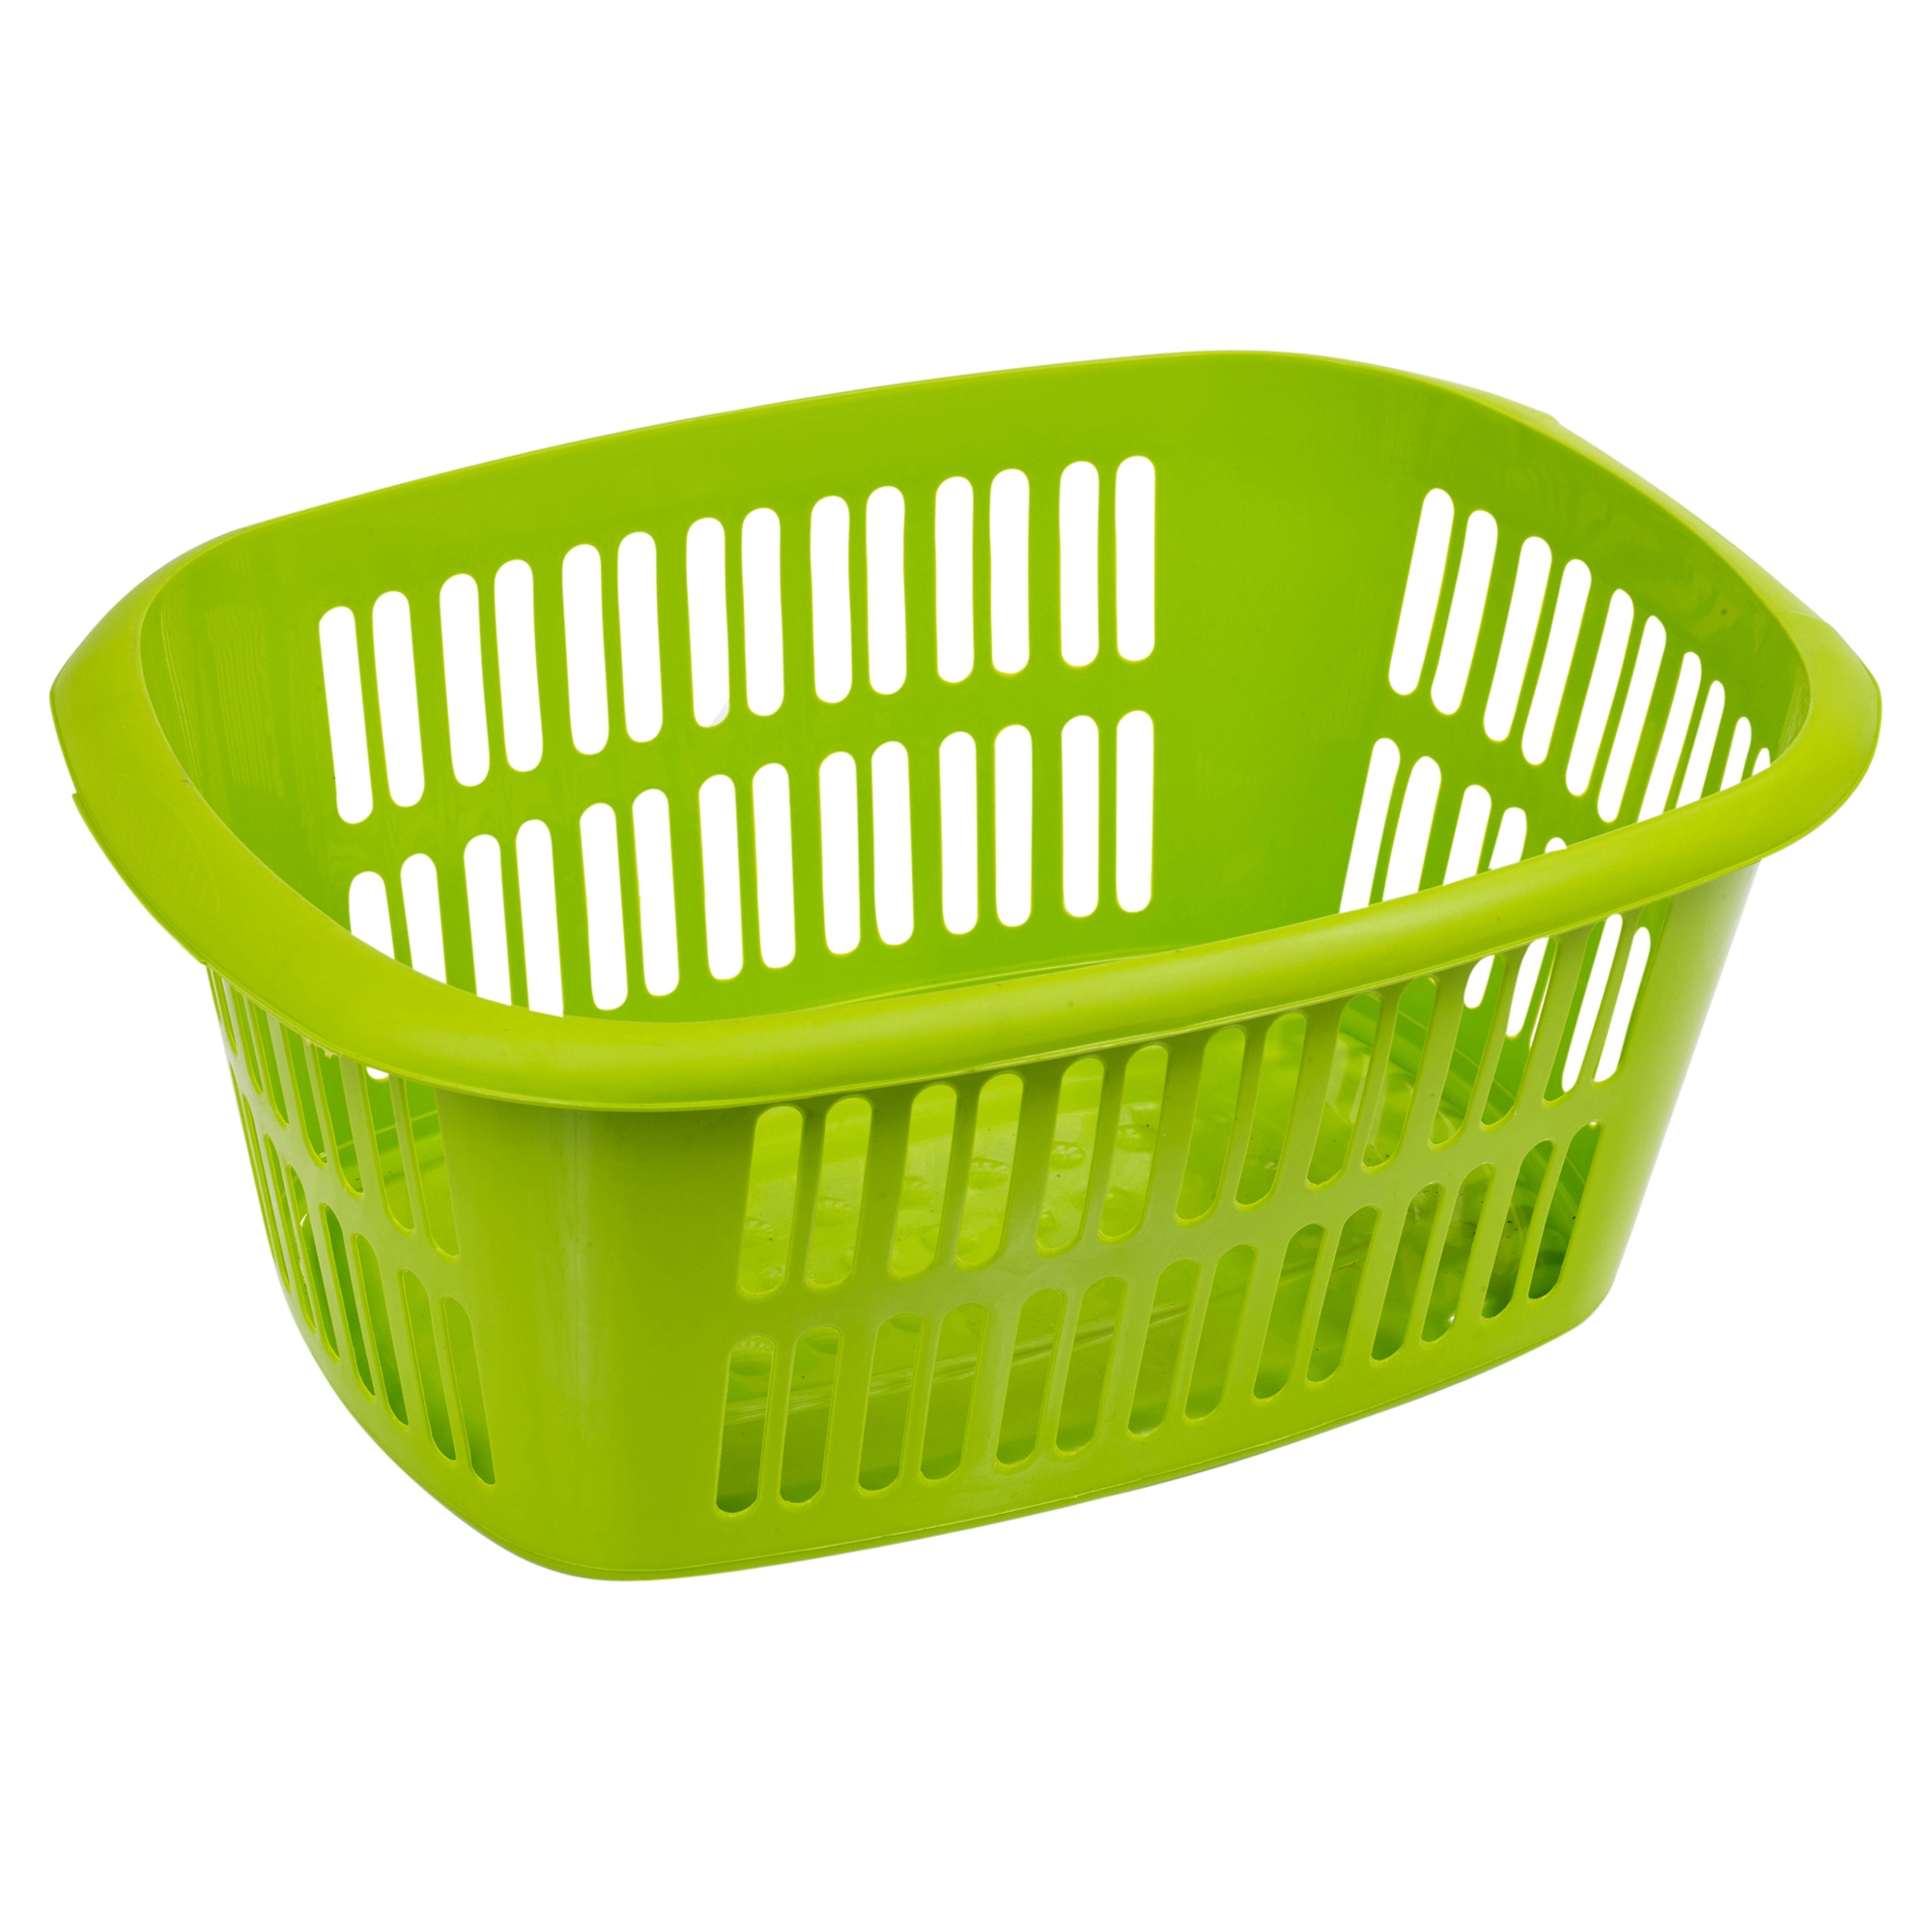 Large 55L Rectangular Laundry Basket Handles Storage Washing Bin Hamper ...